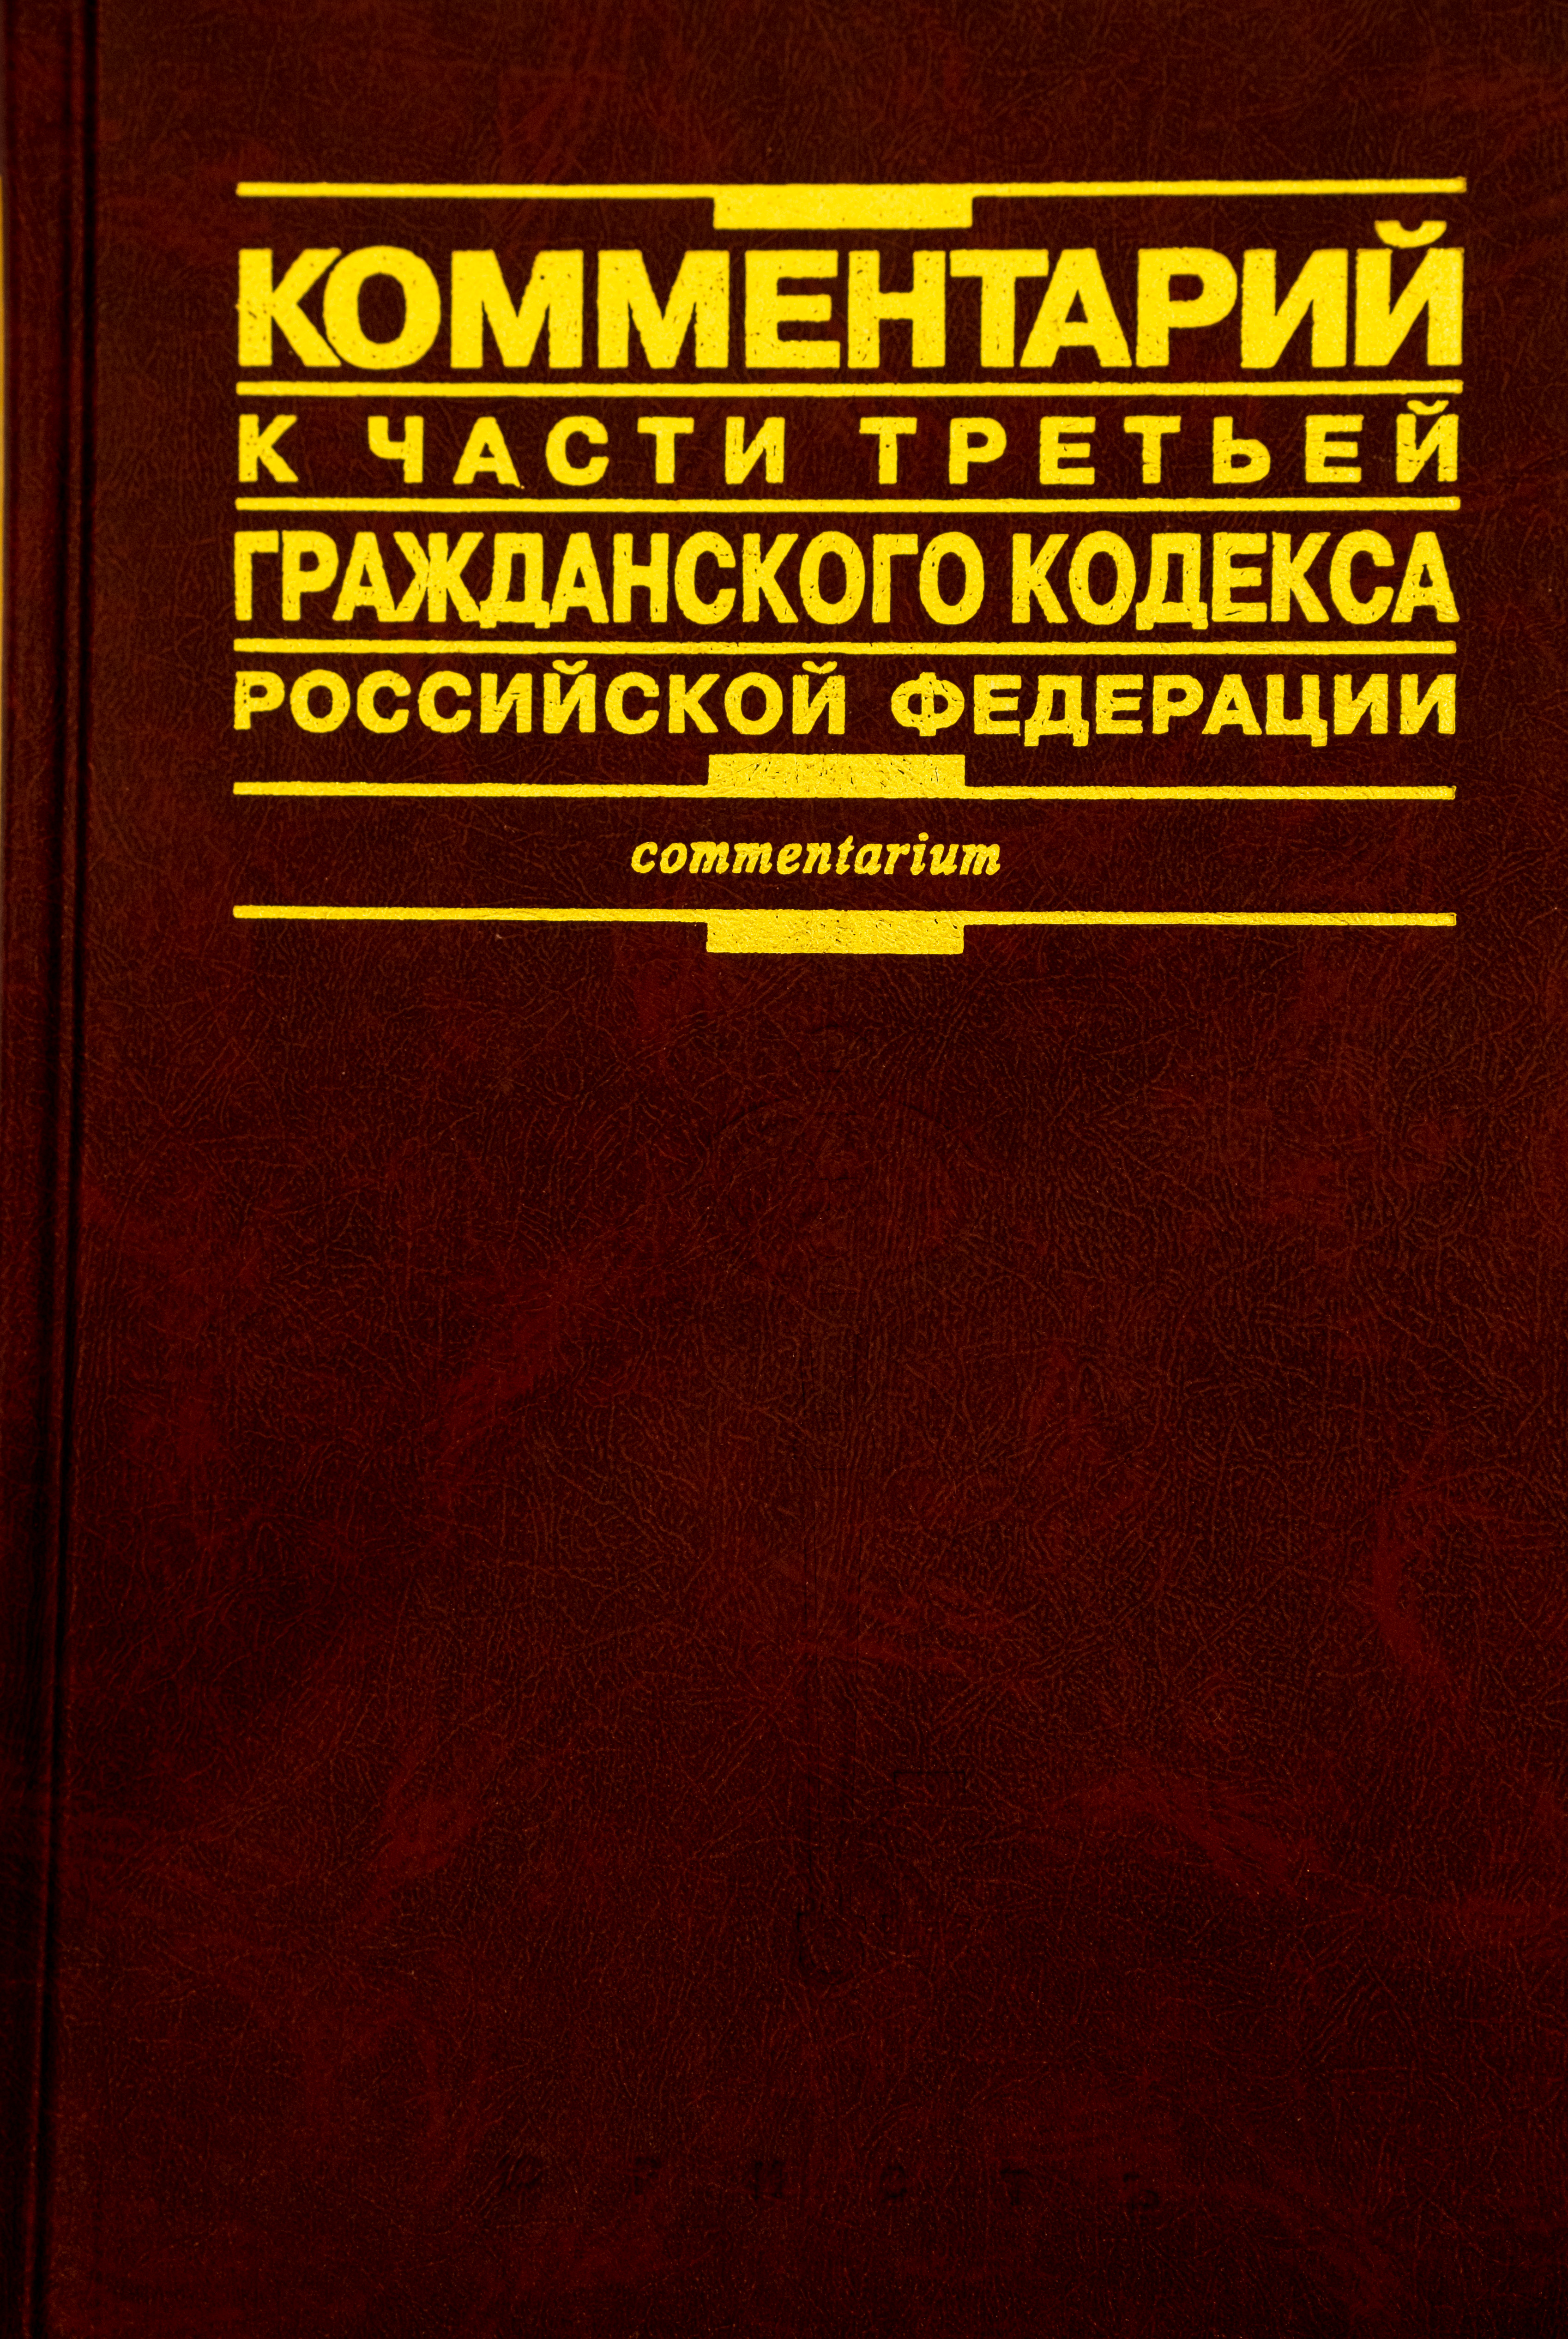 Комментарий к части третьей Гражданского кодекса РФ